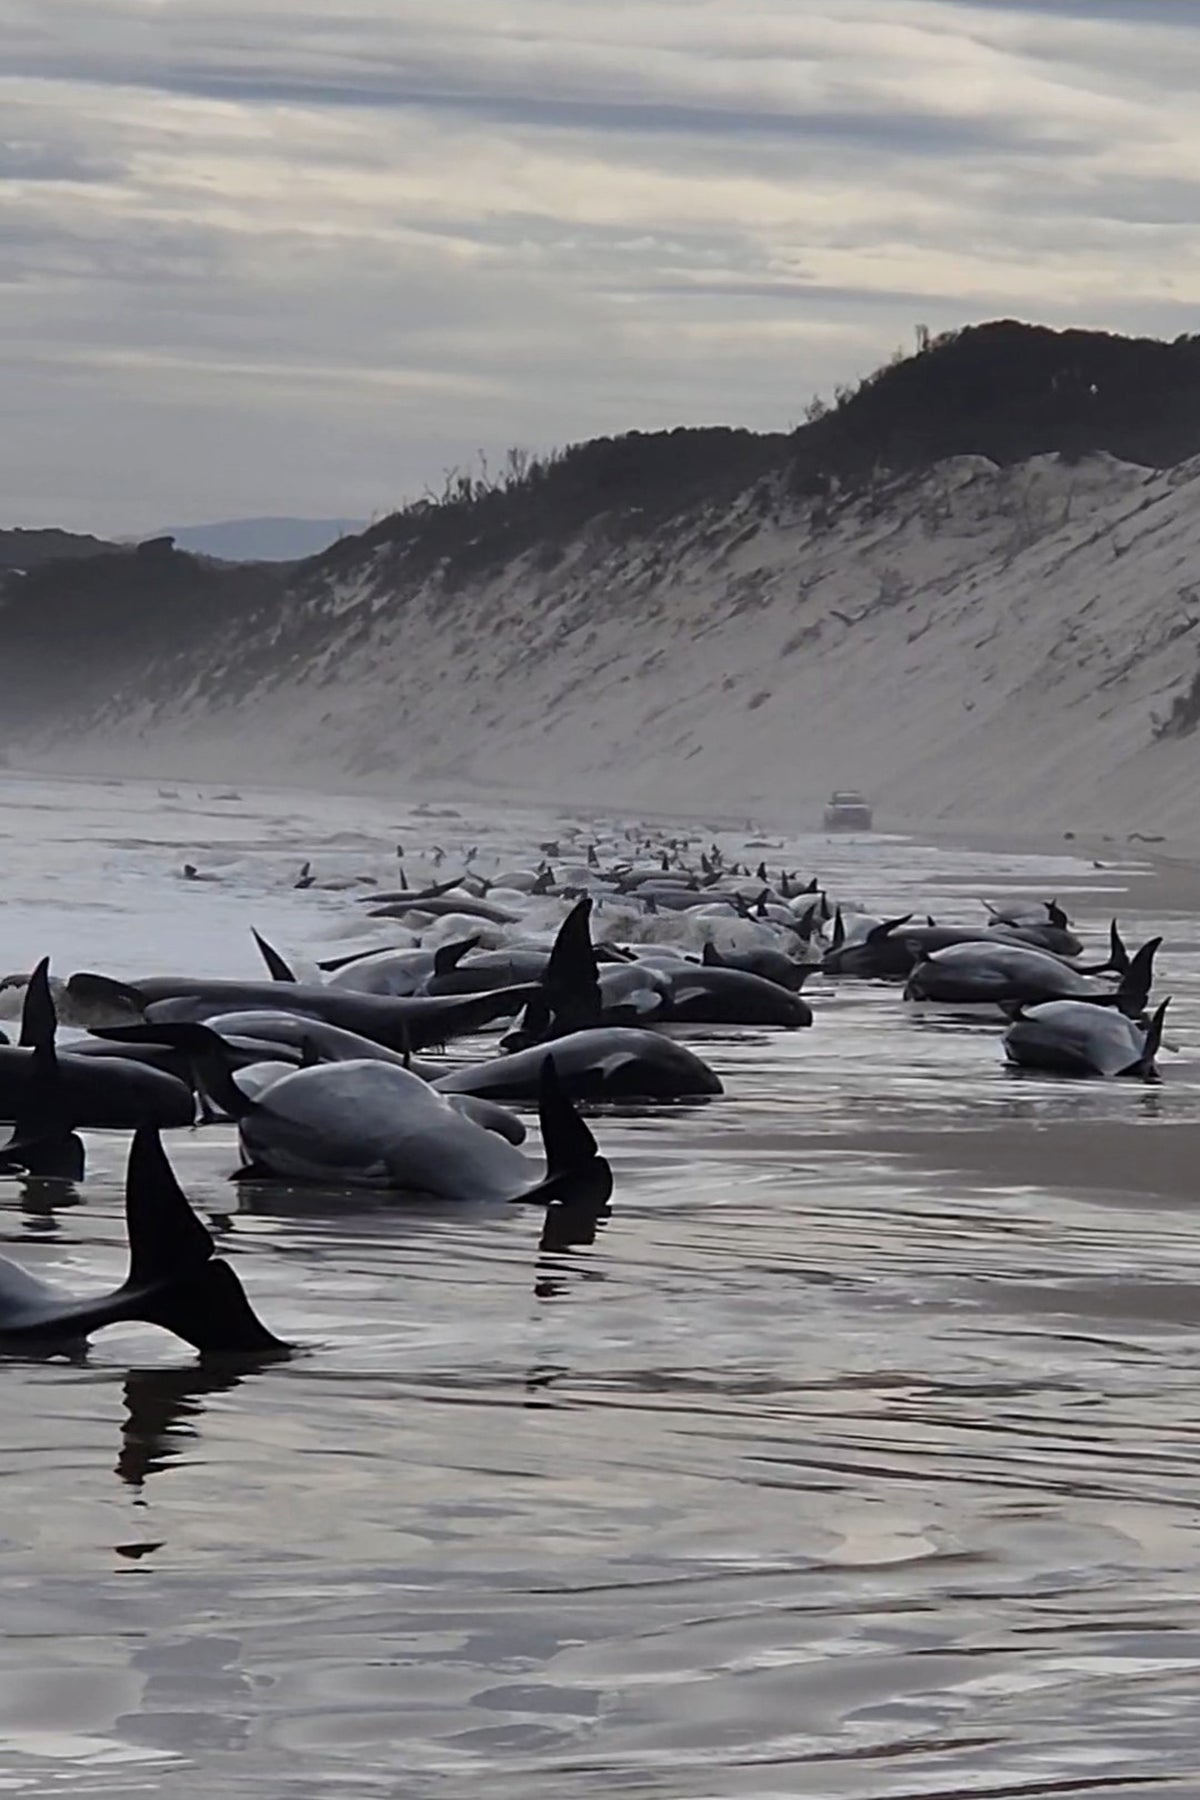 35 kişi için kurtarma çalışmaları devam ederken, Tazmanya sahilinde yaklaşık 200 karaya oturmuş balina öldü